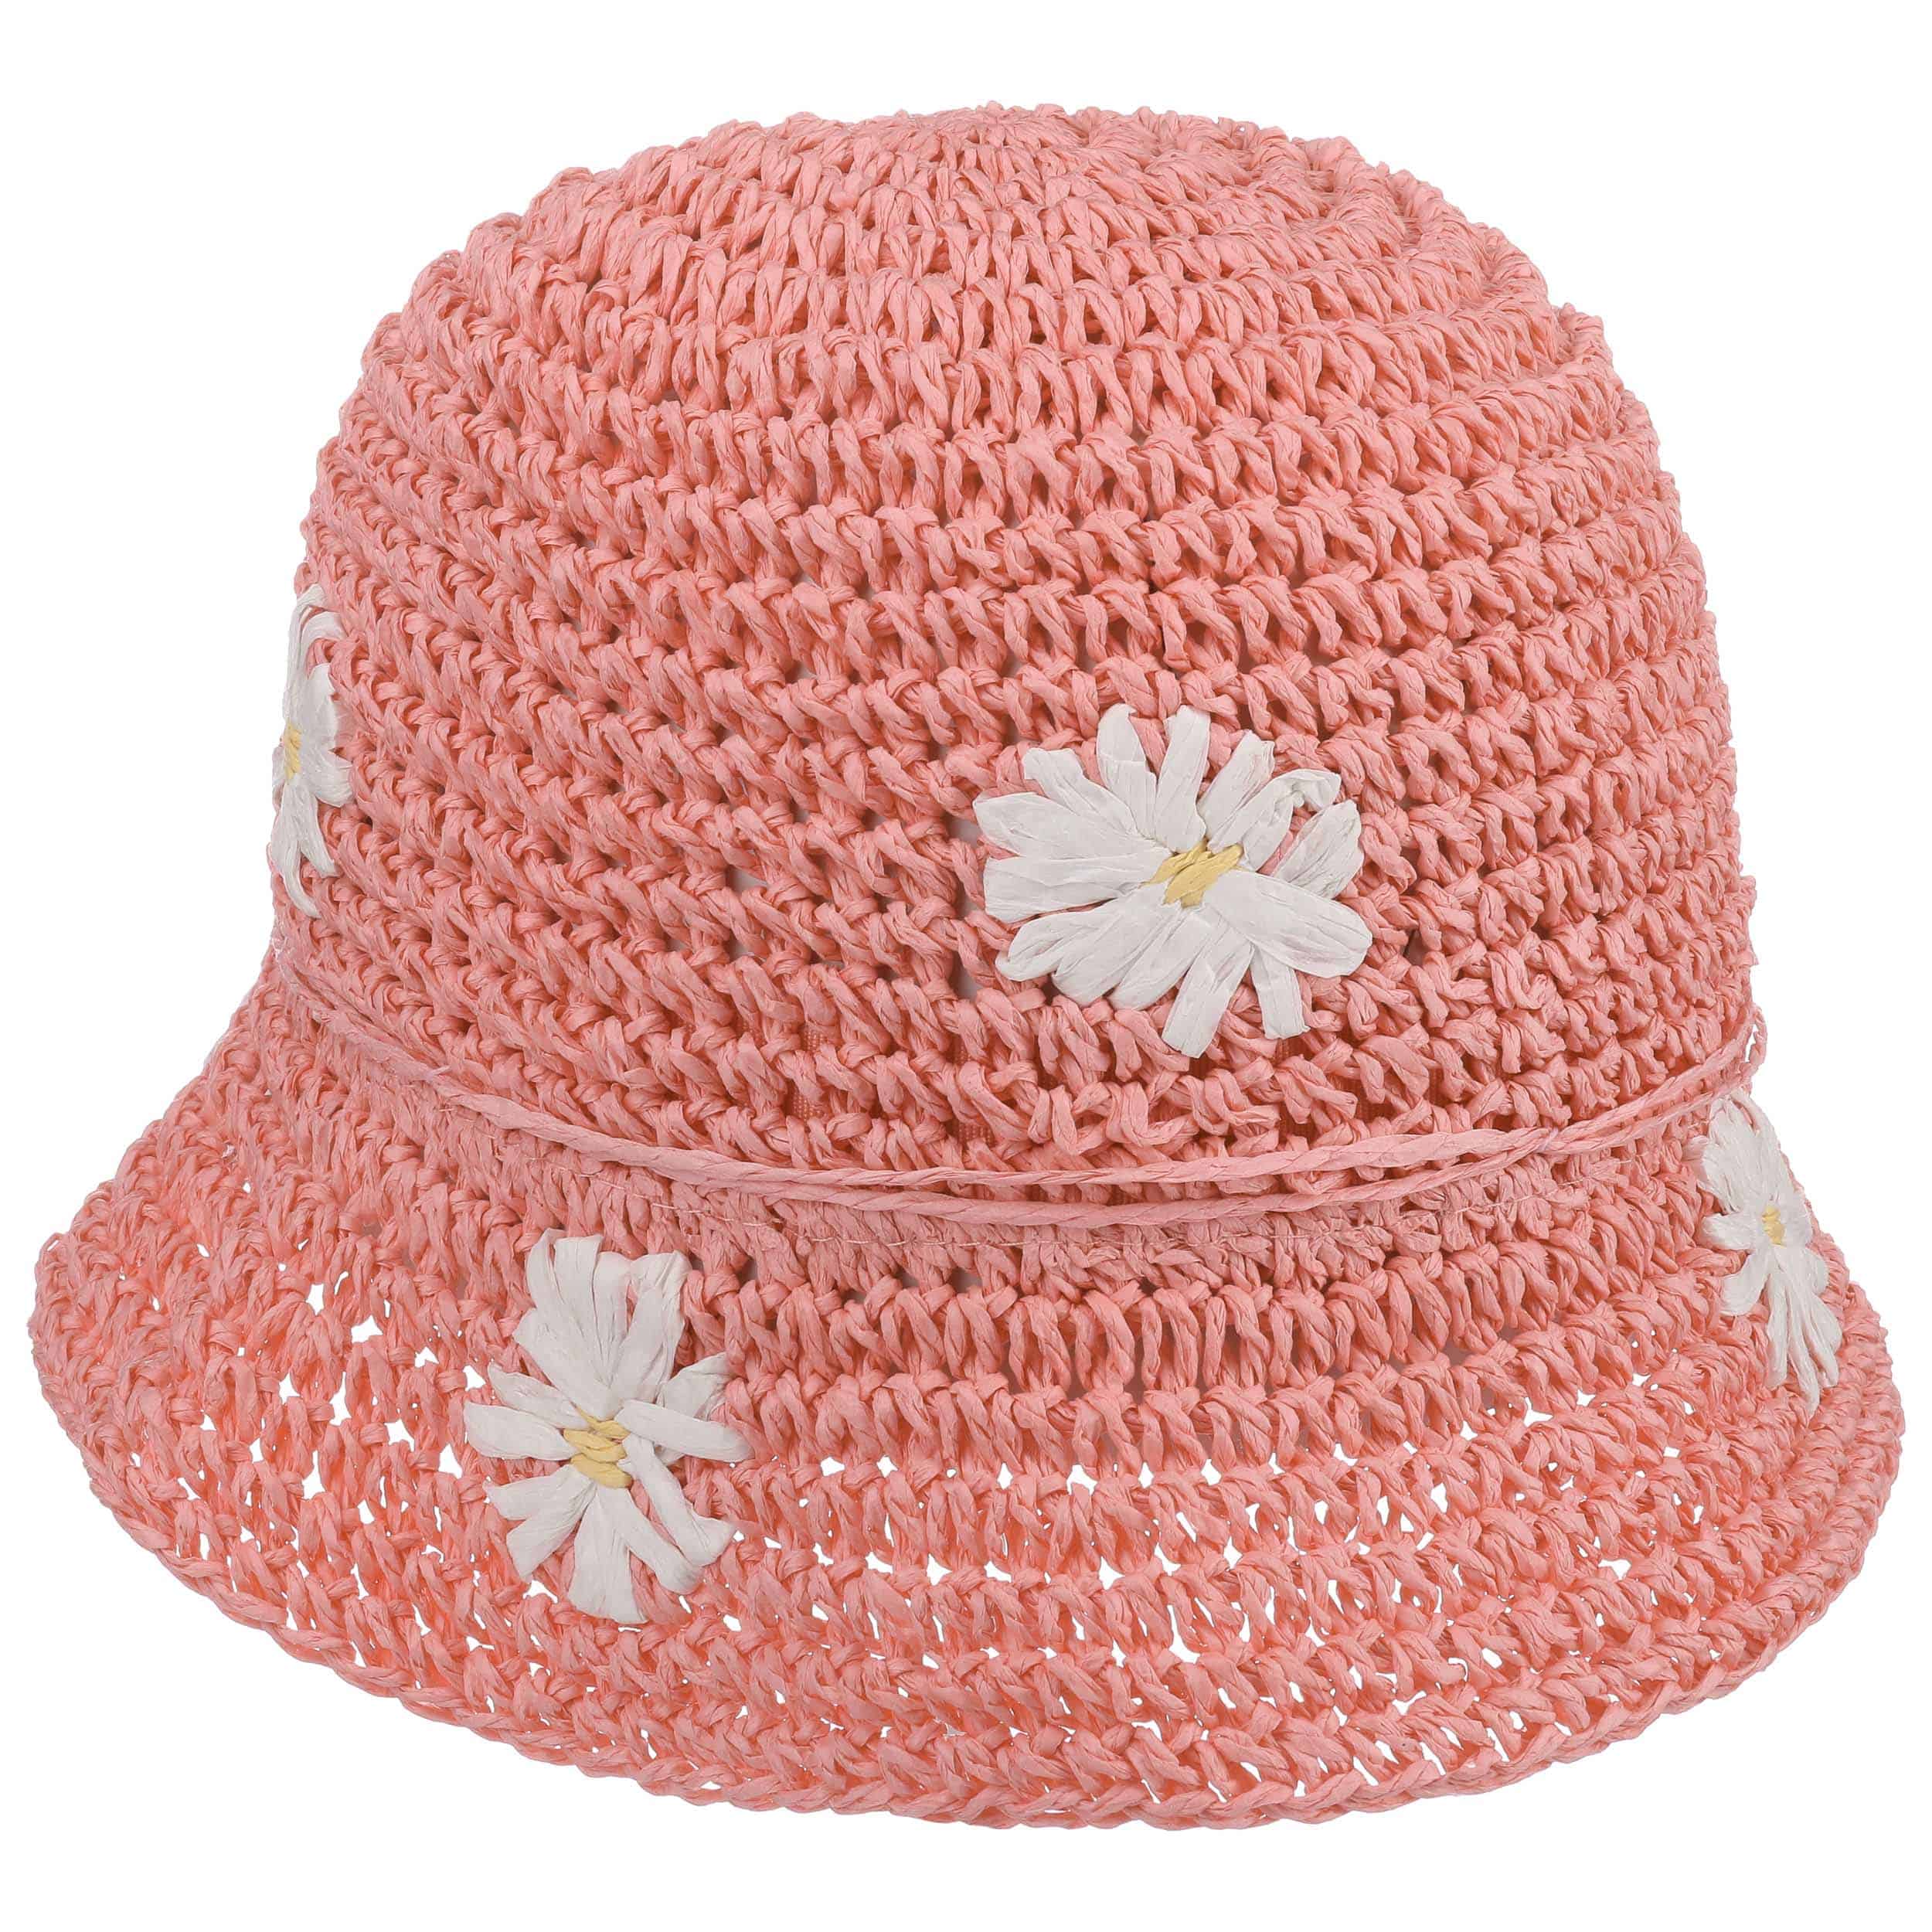 Sombrero para Niña Crochet Flower by maximo - 19,95